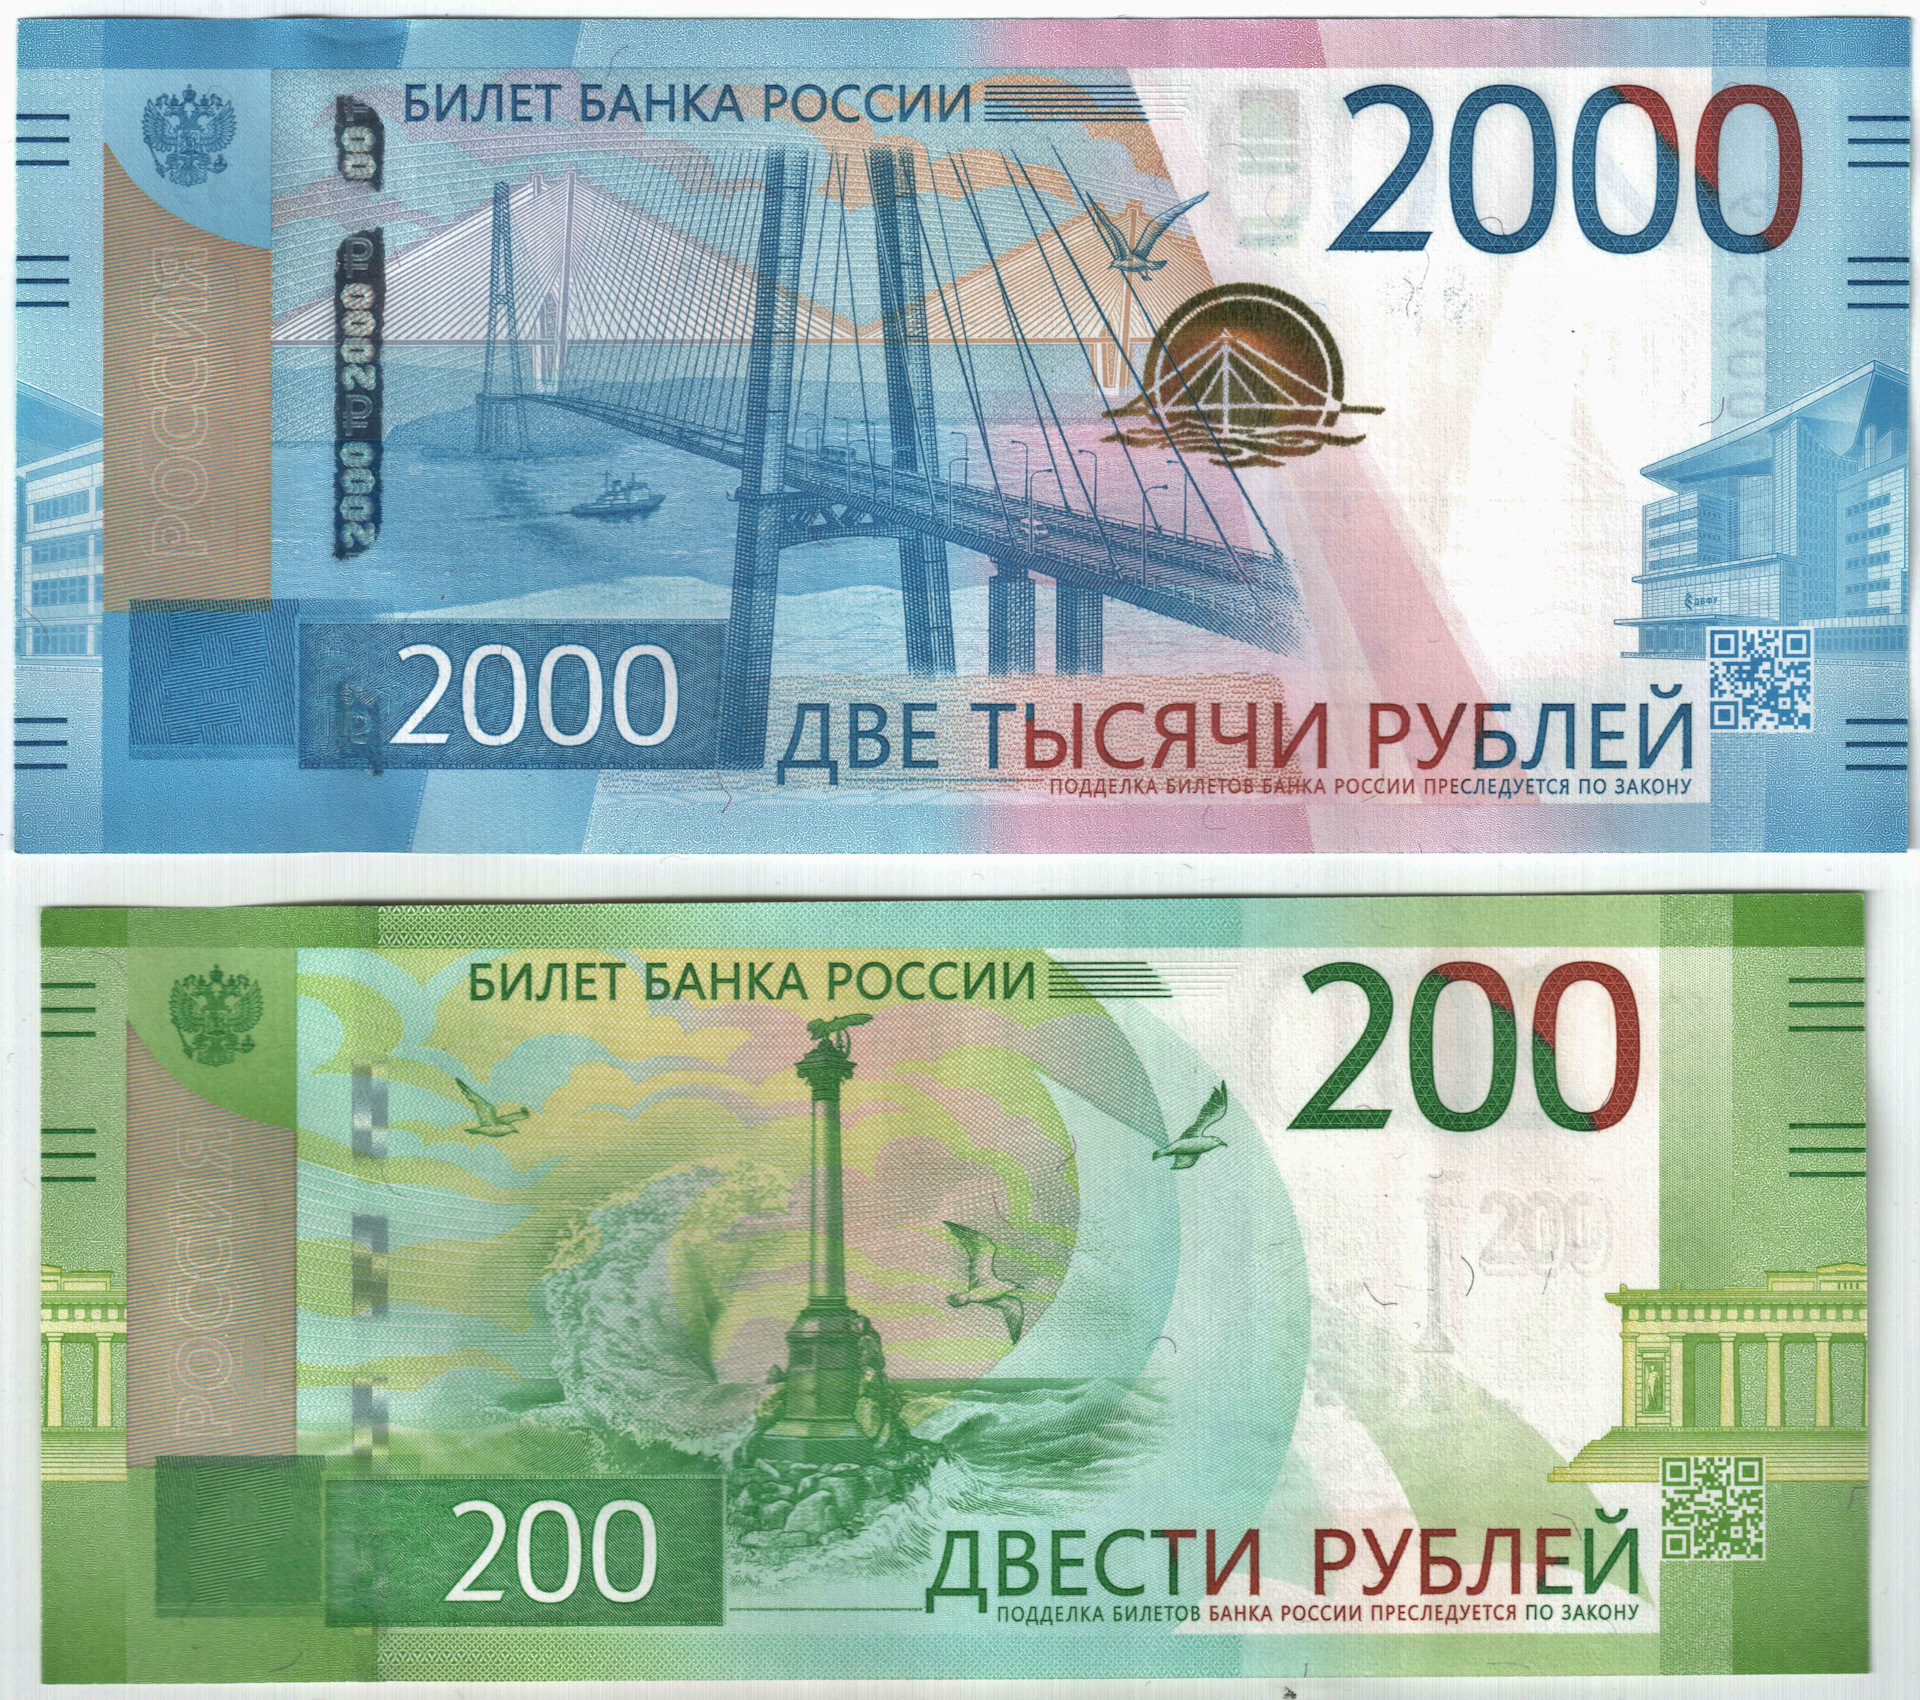 200 рублей новая купюра